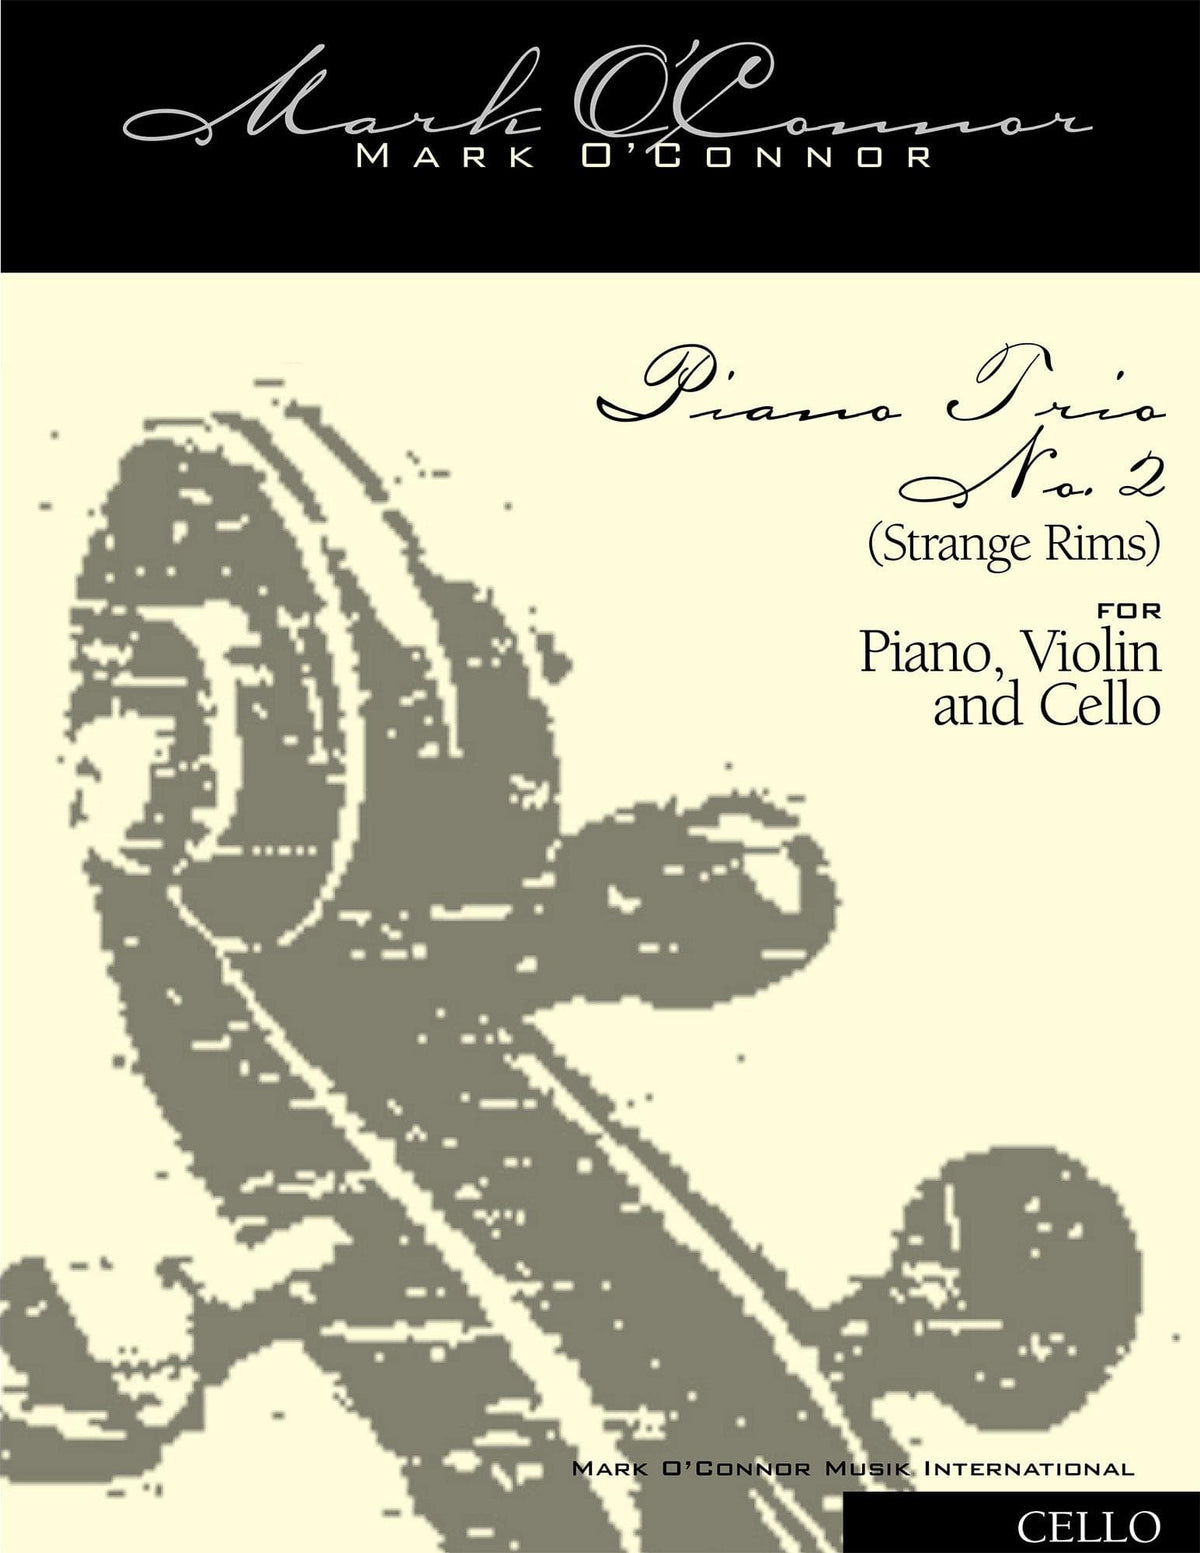 O'Connor, Mark - Piano Trio No. 2 (Strange Rims) for Piano, Violin, and Cello - Cello - Digital Download